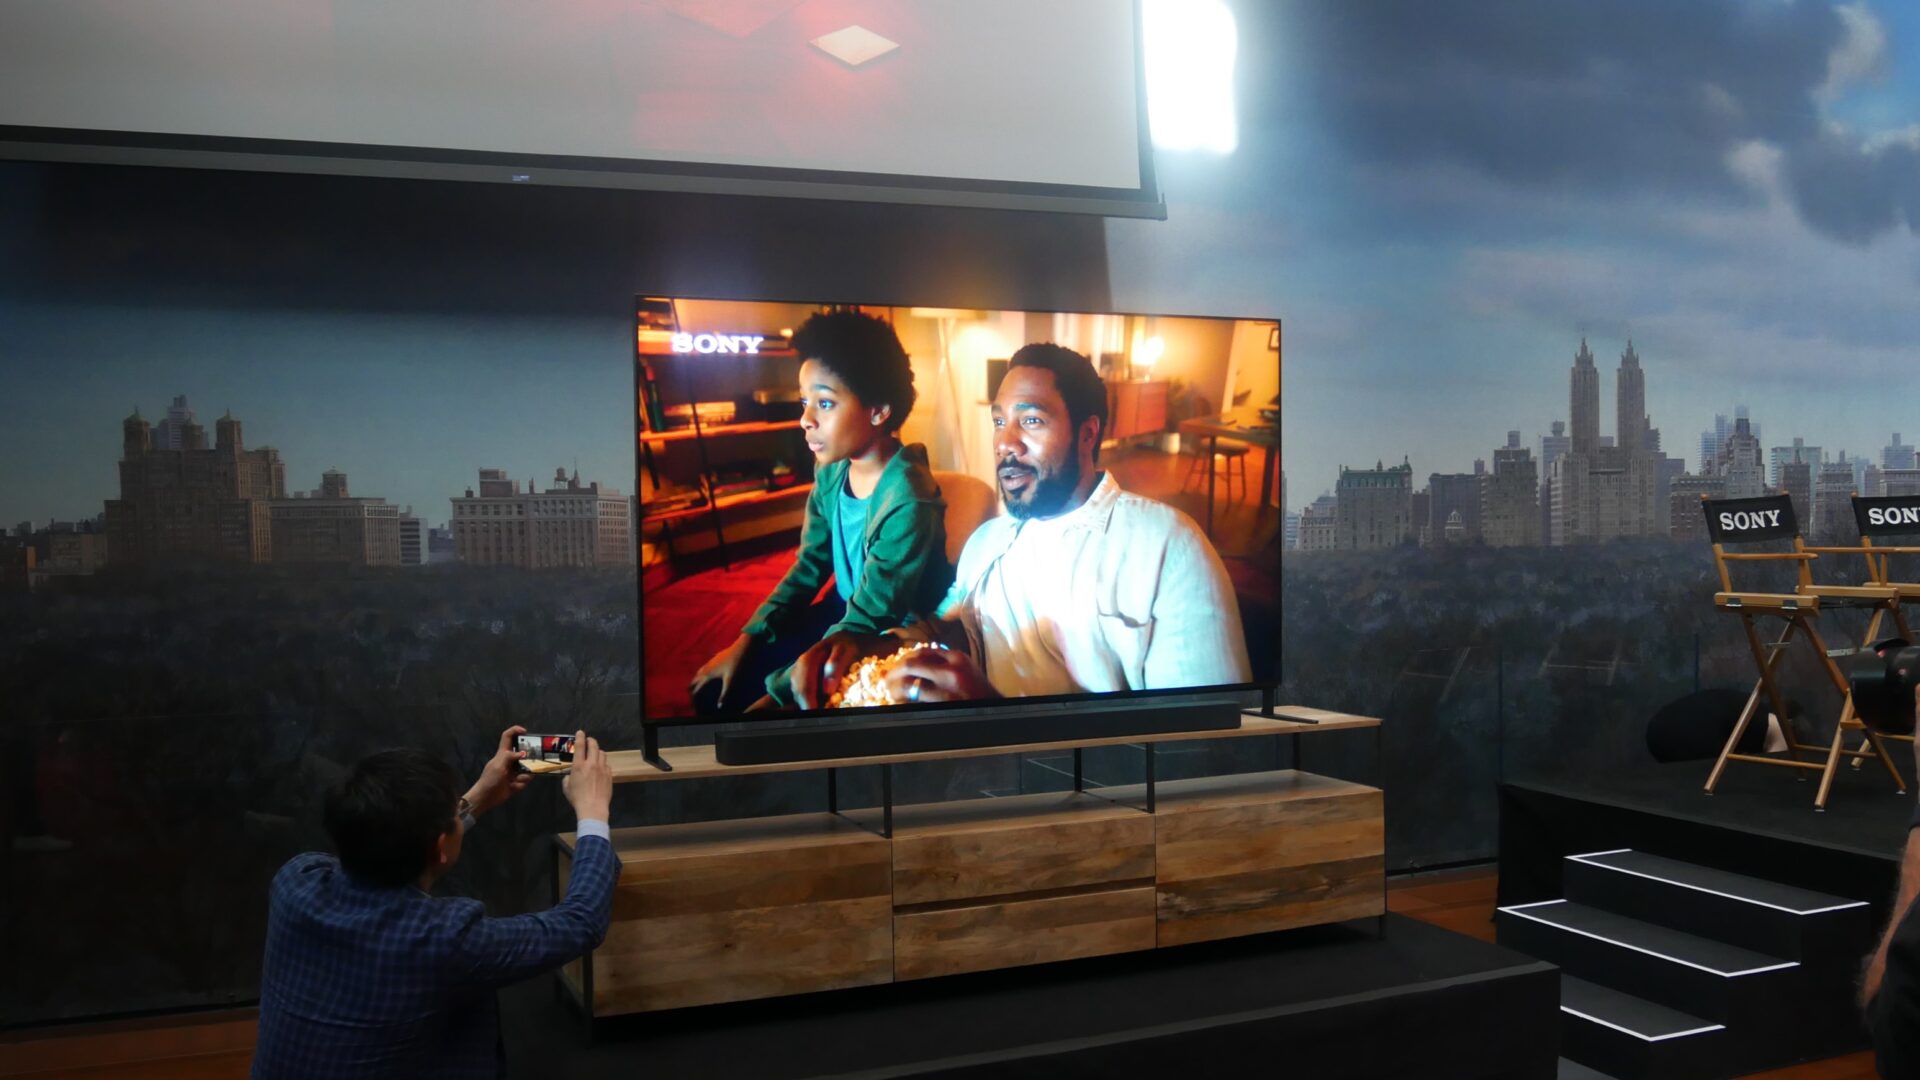 Sony lanserar nya TV-apparater: Bravia 9, Bravia 8 och Bravia 7